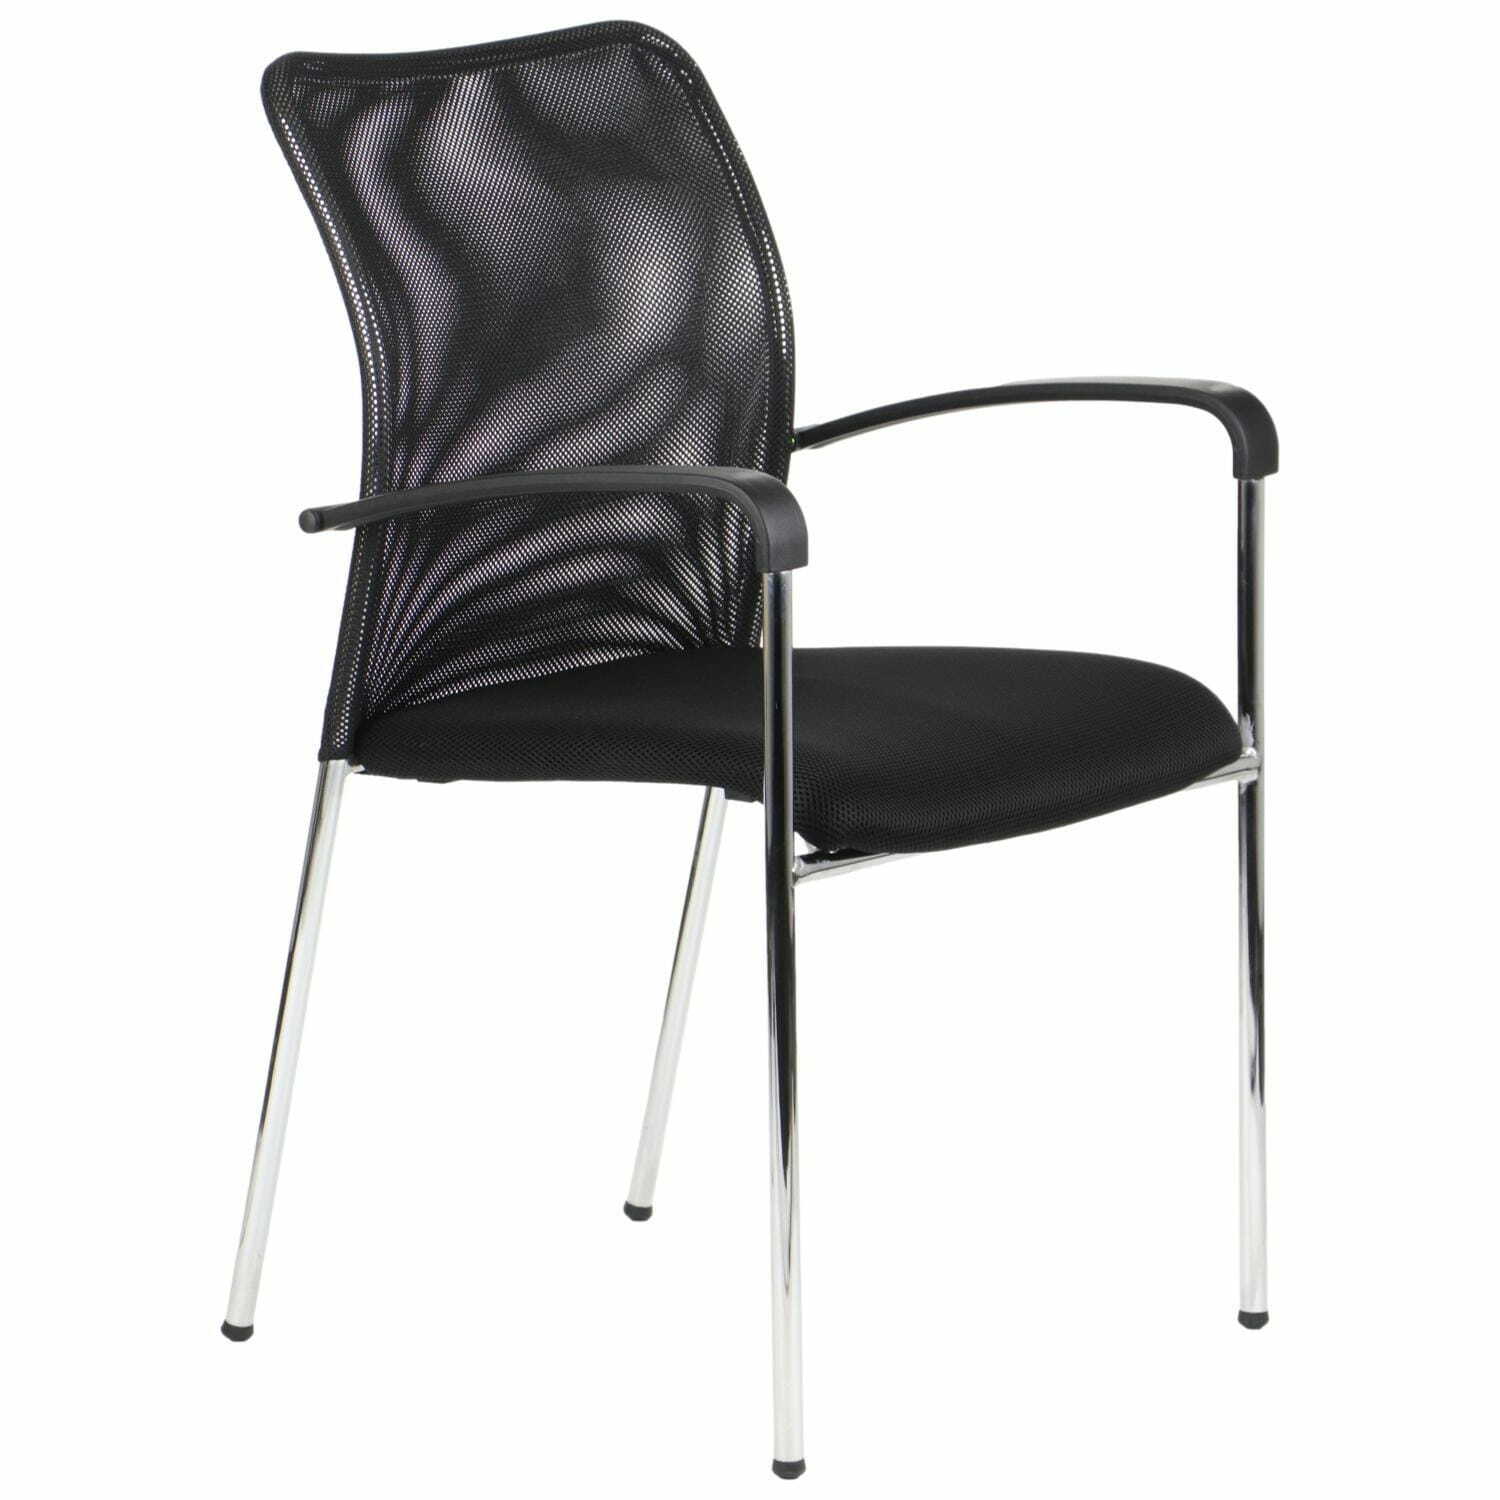 Krzesło konferencyjne do biura, hotelu lub restauracji na stelażu chromowanym HN-7501 - tapicerka w kolorze czarnym